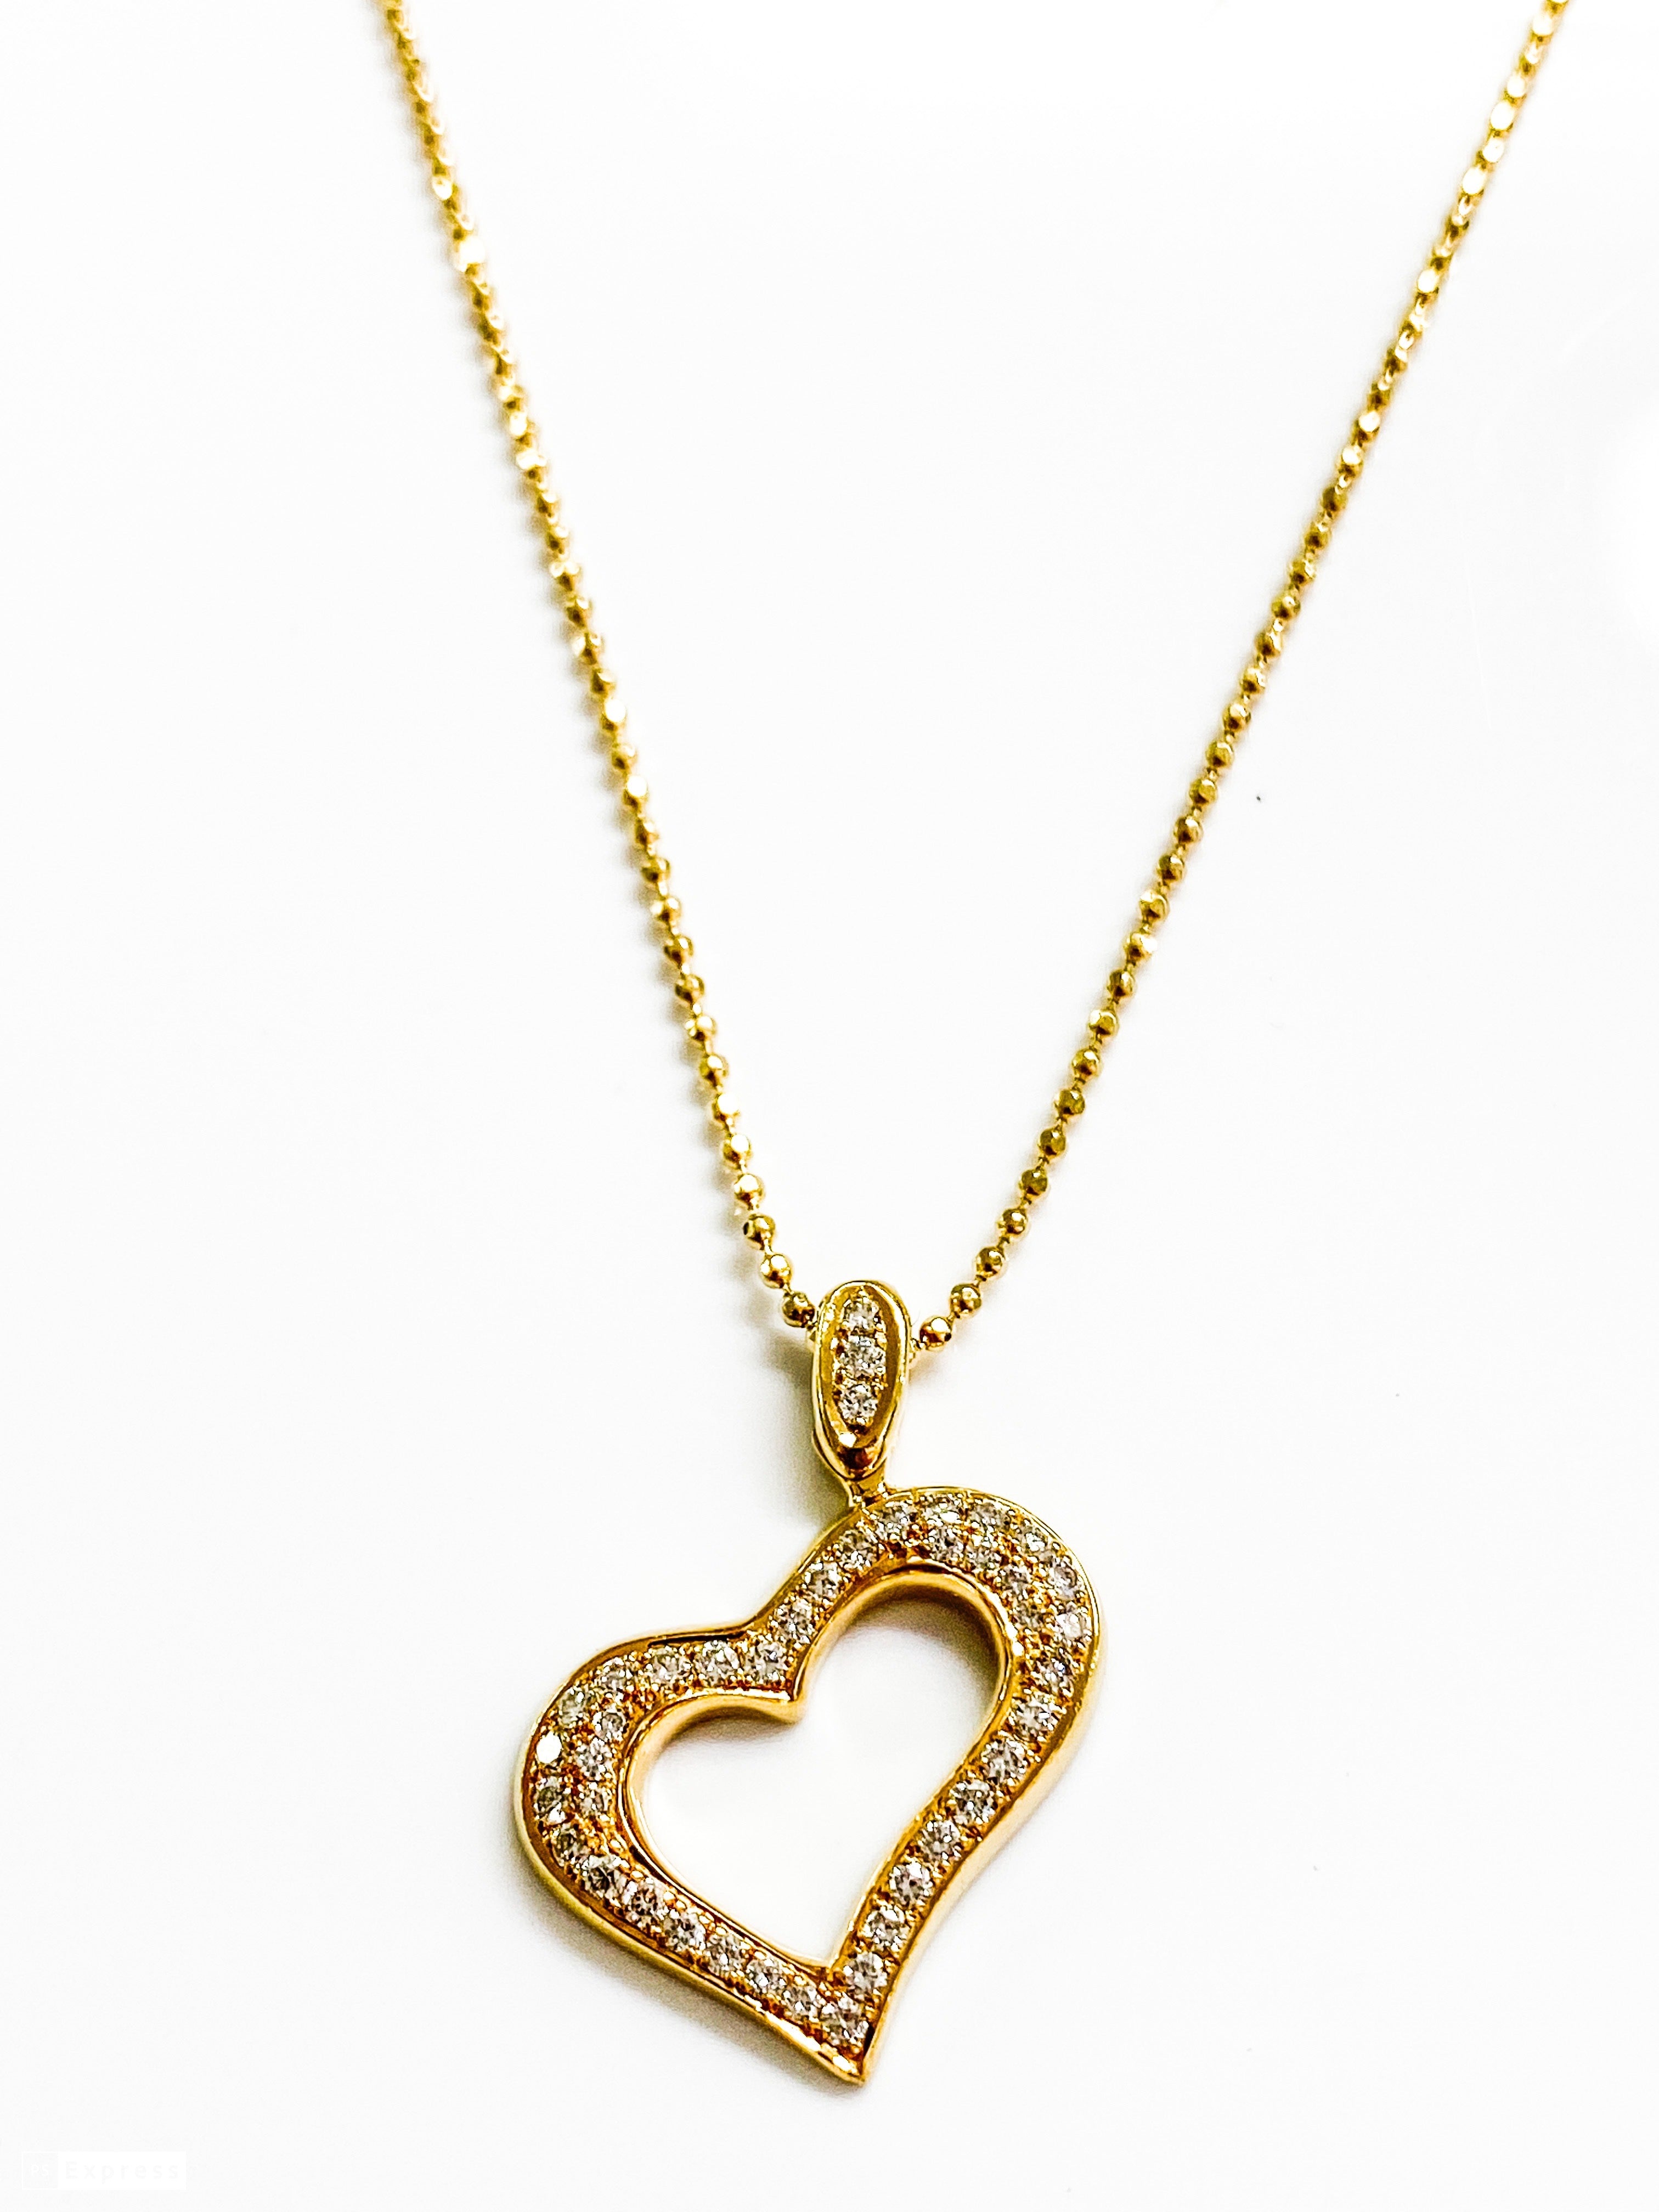 שרשרת זהב צהוב 14 קארט דוגמת עיגולים עם תליון לב משובץ יהלומים